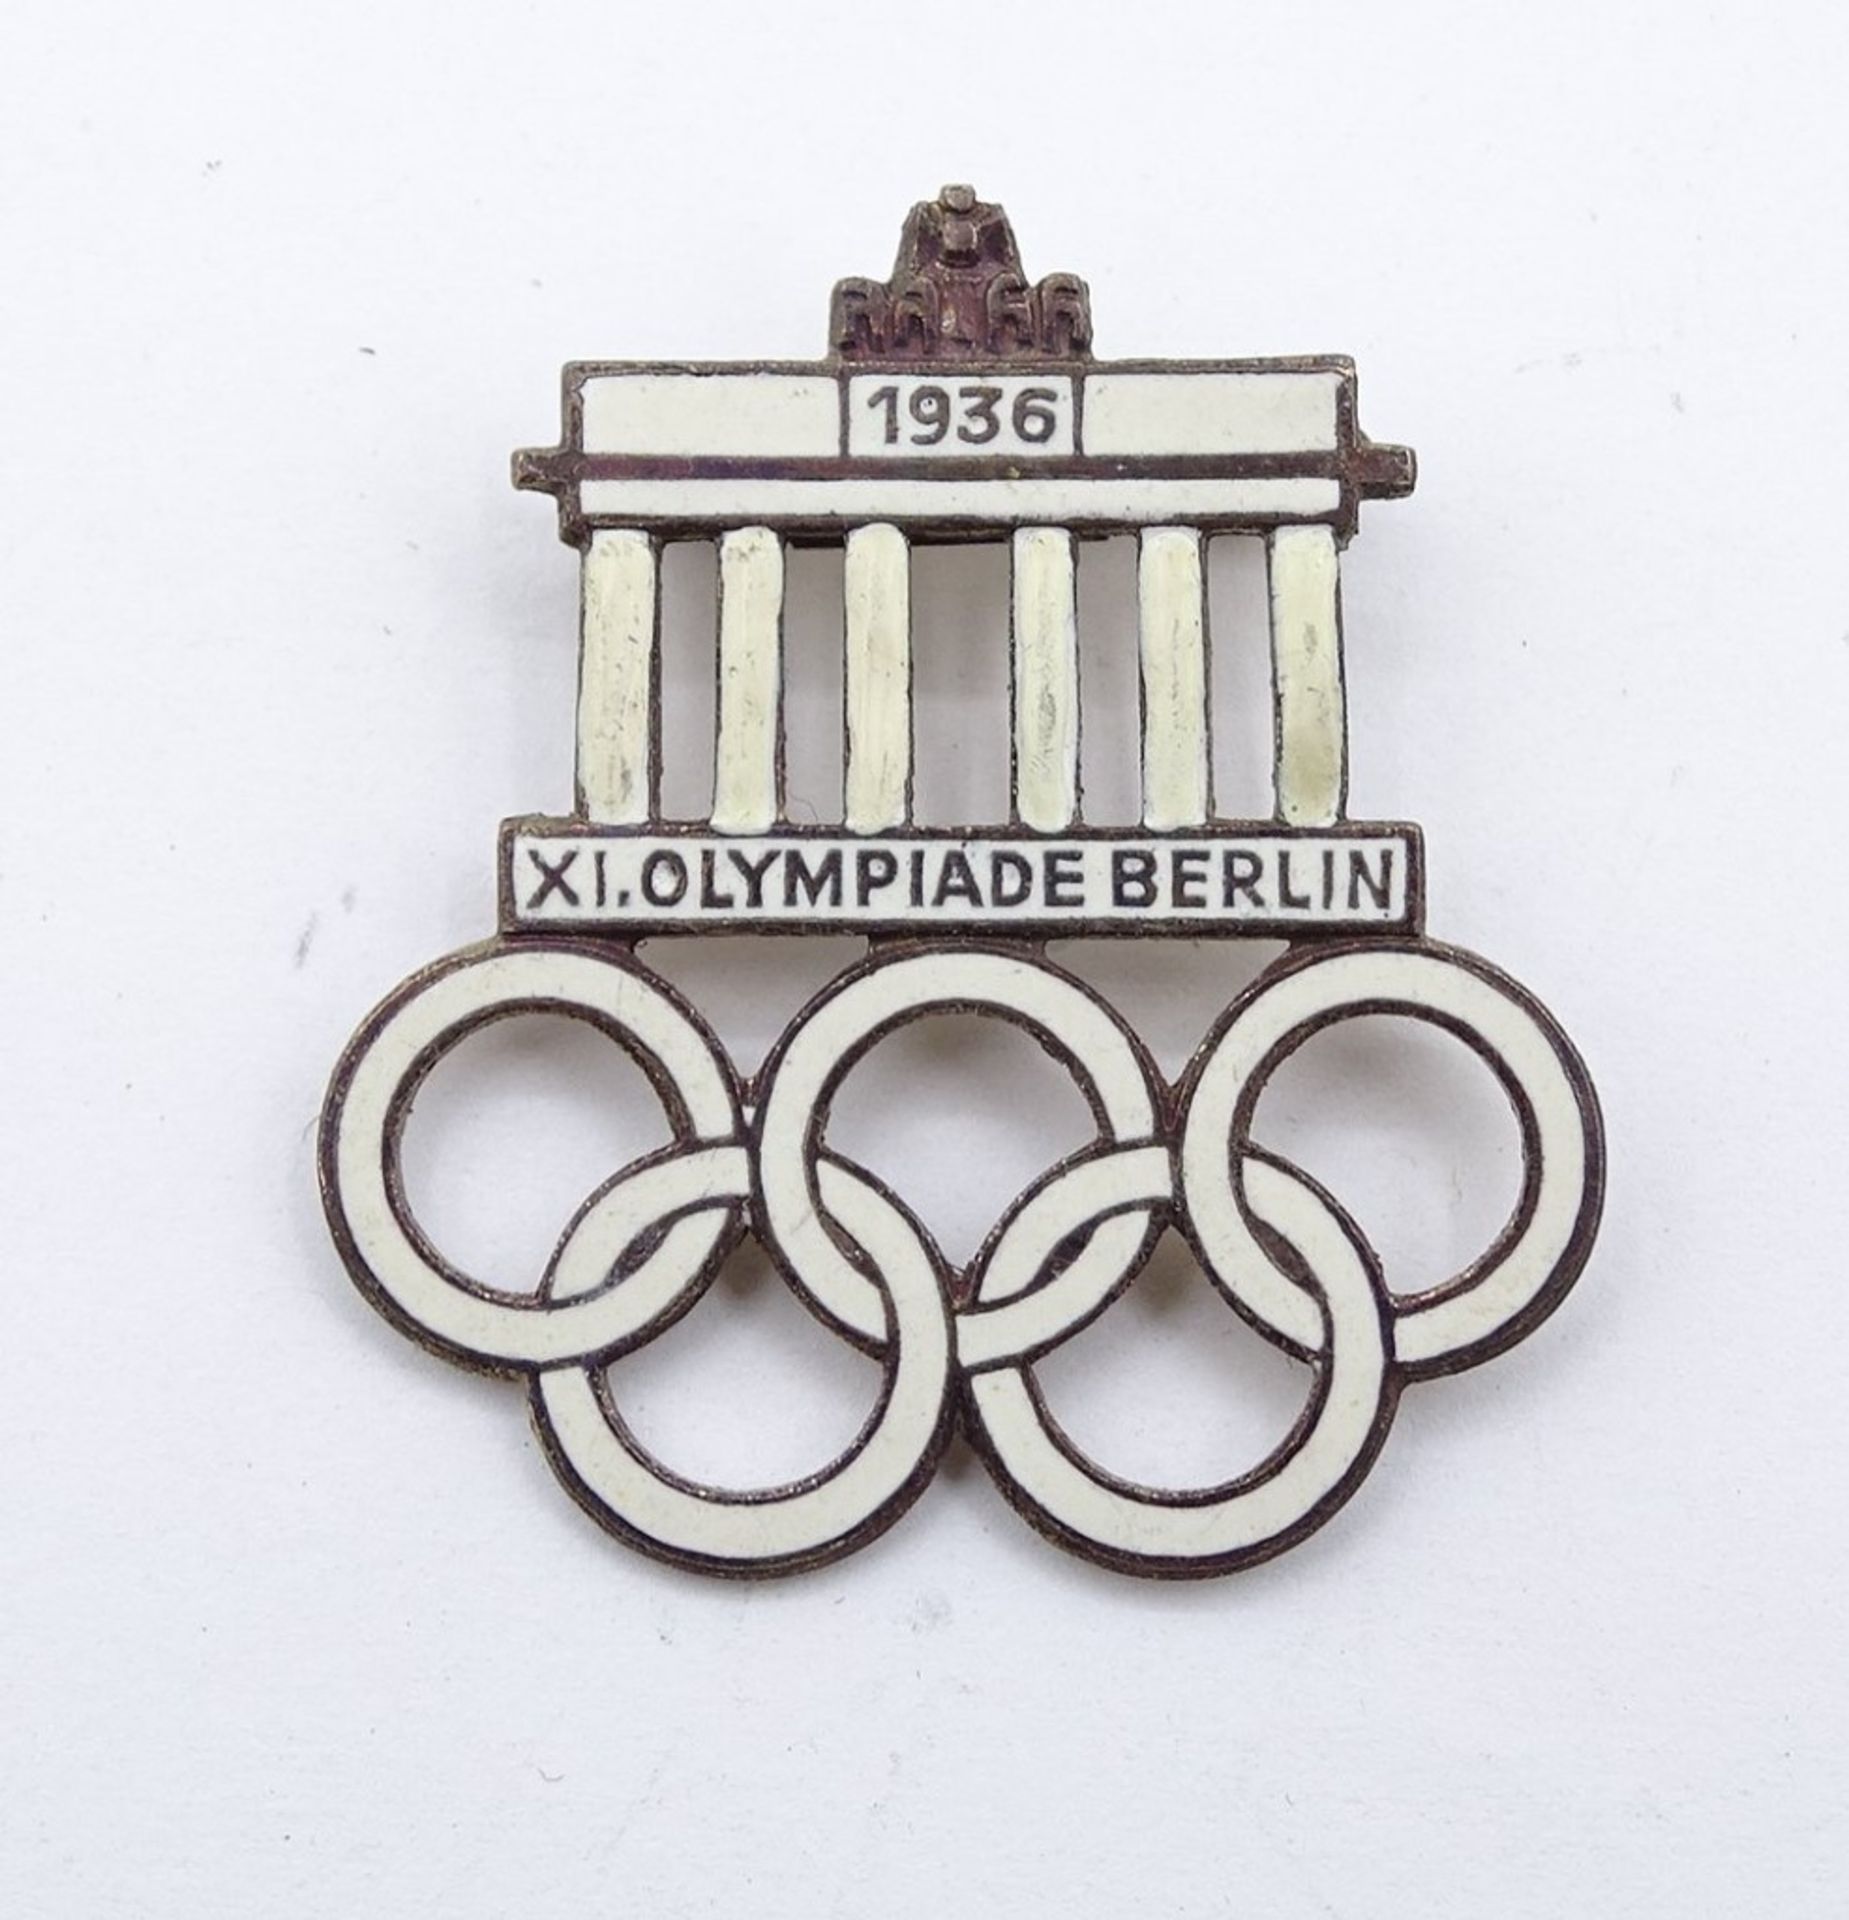 Emaillierter Metallanstecker "XI. Olympiade Berlin 1936", Rückseite mit Hersteller